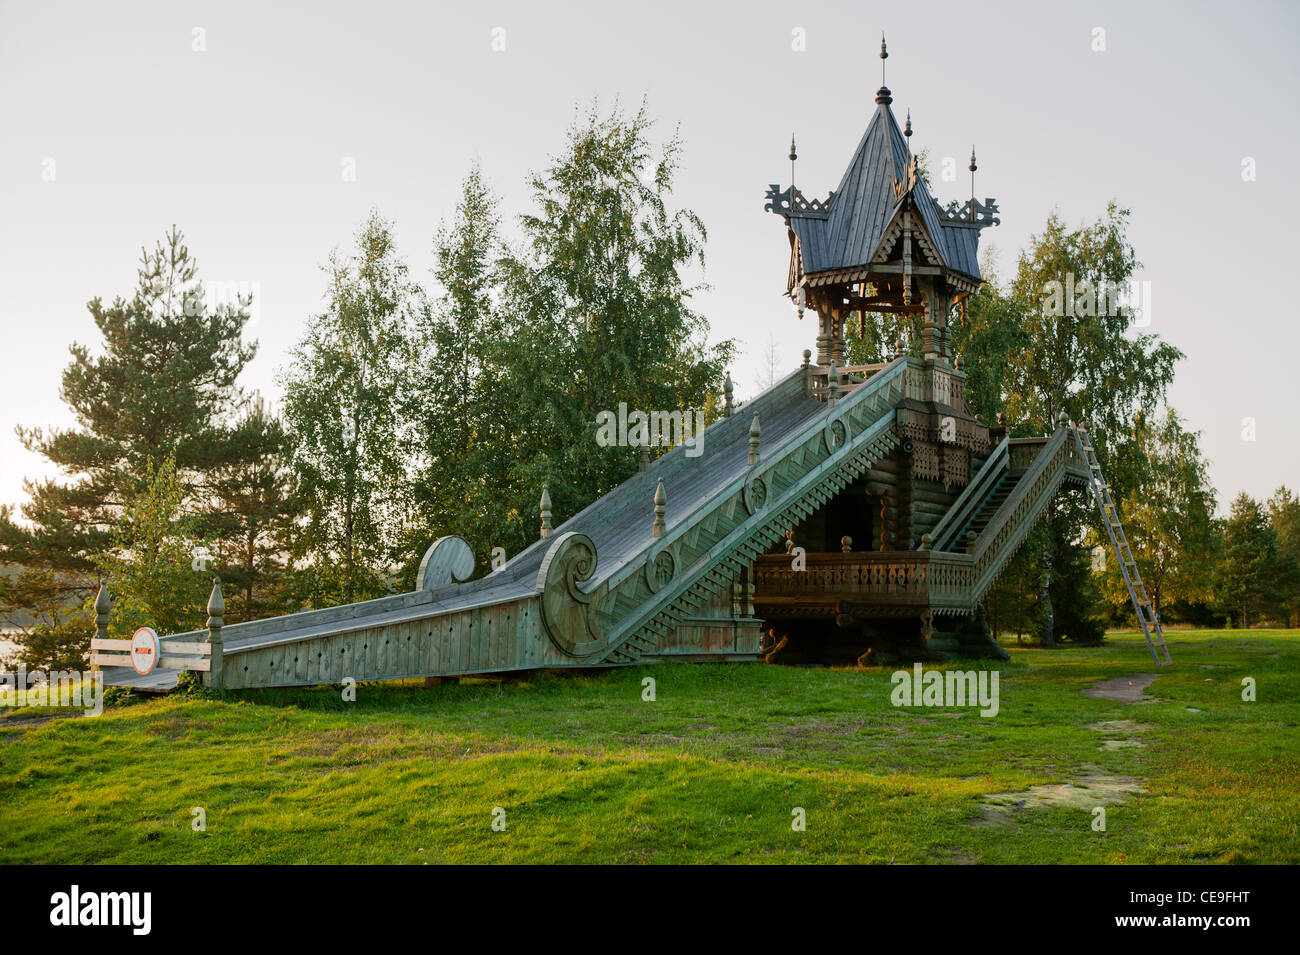 Russia, Leningrad Region, Podporozhsky. In Mandrogi, a crafts village on the Svir river. Stock Photo